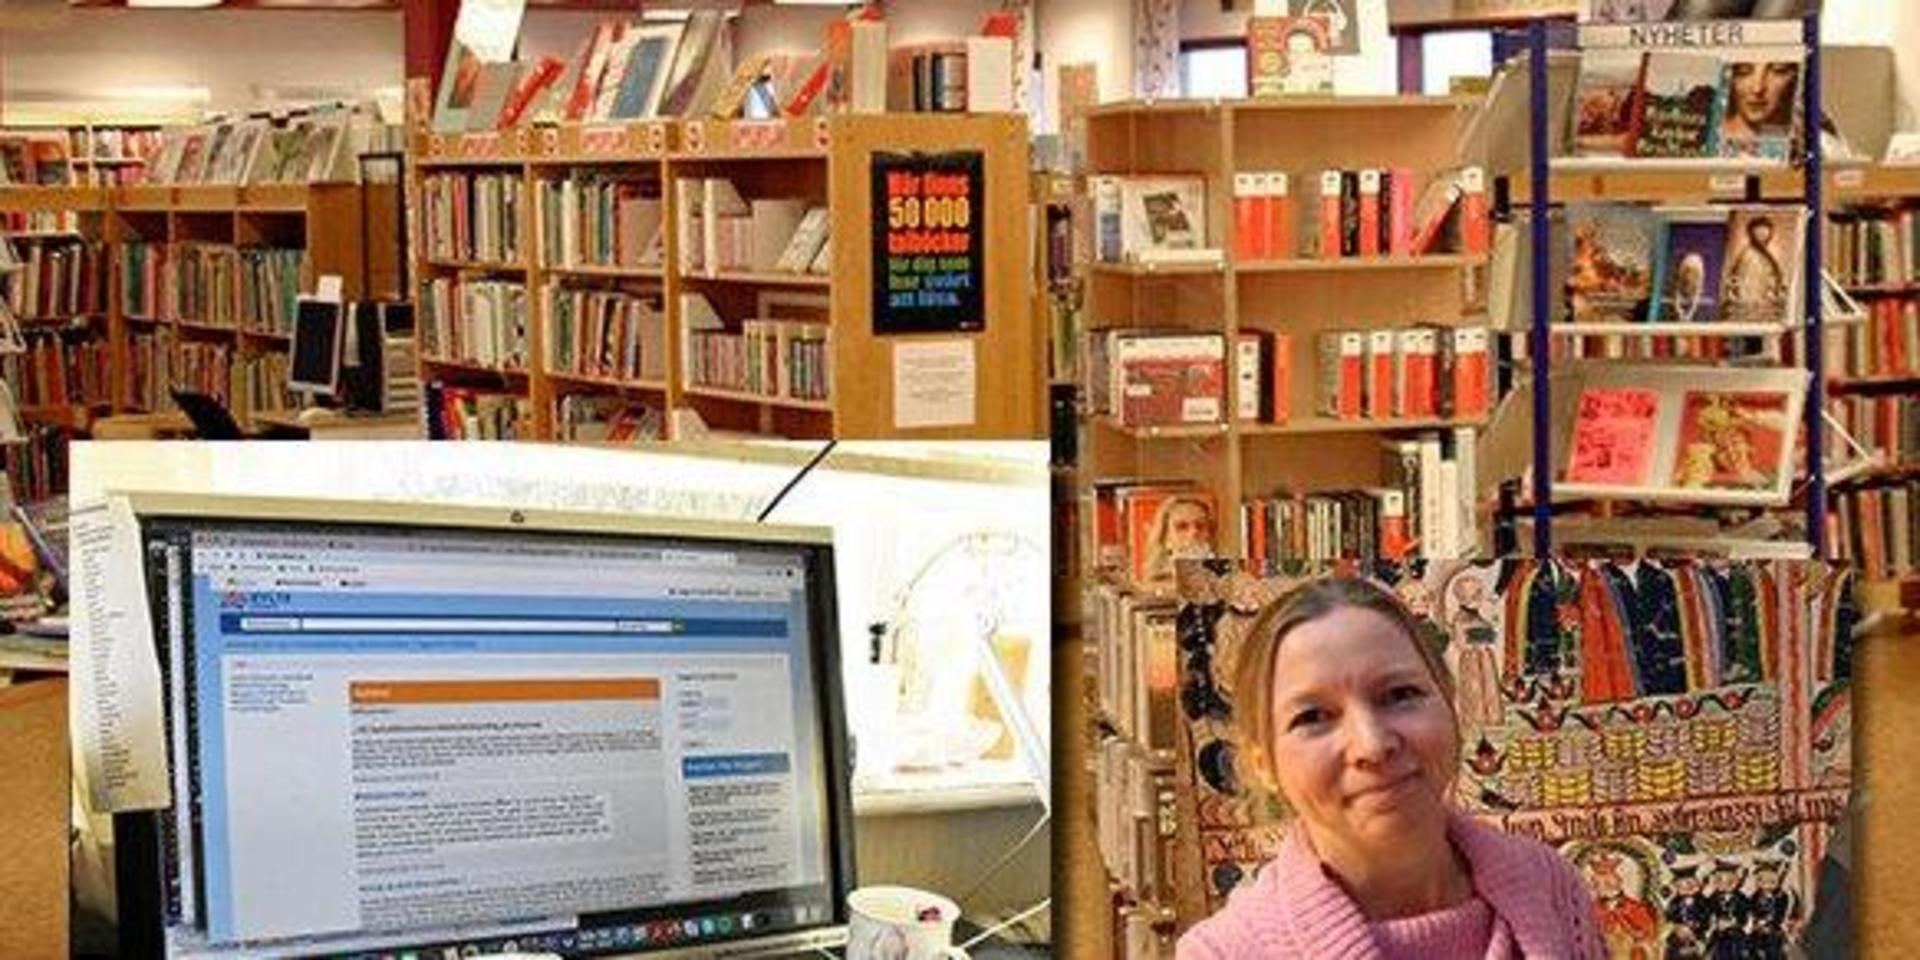 Den digitala utlåningen ökar kraftigt i Hylte. Enligt bibliotekschefen Jessica Blohm är det unga läsare som kliver fram.